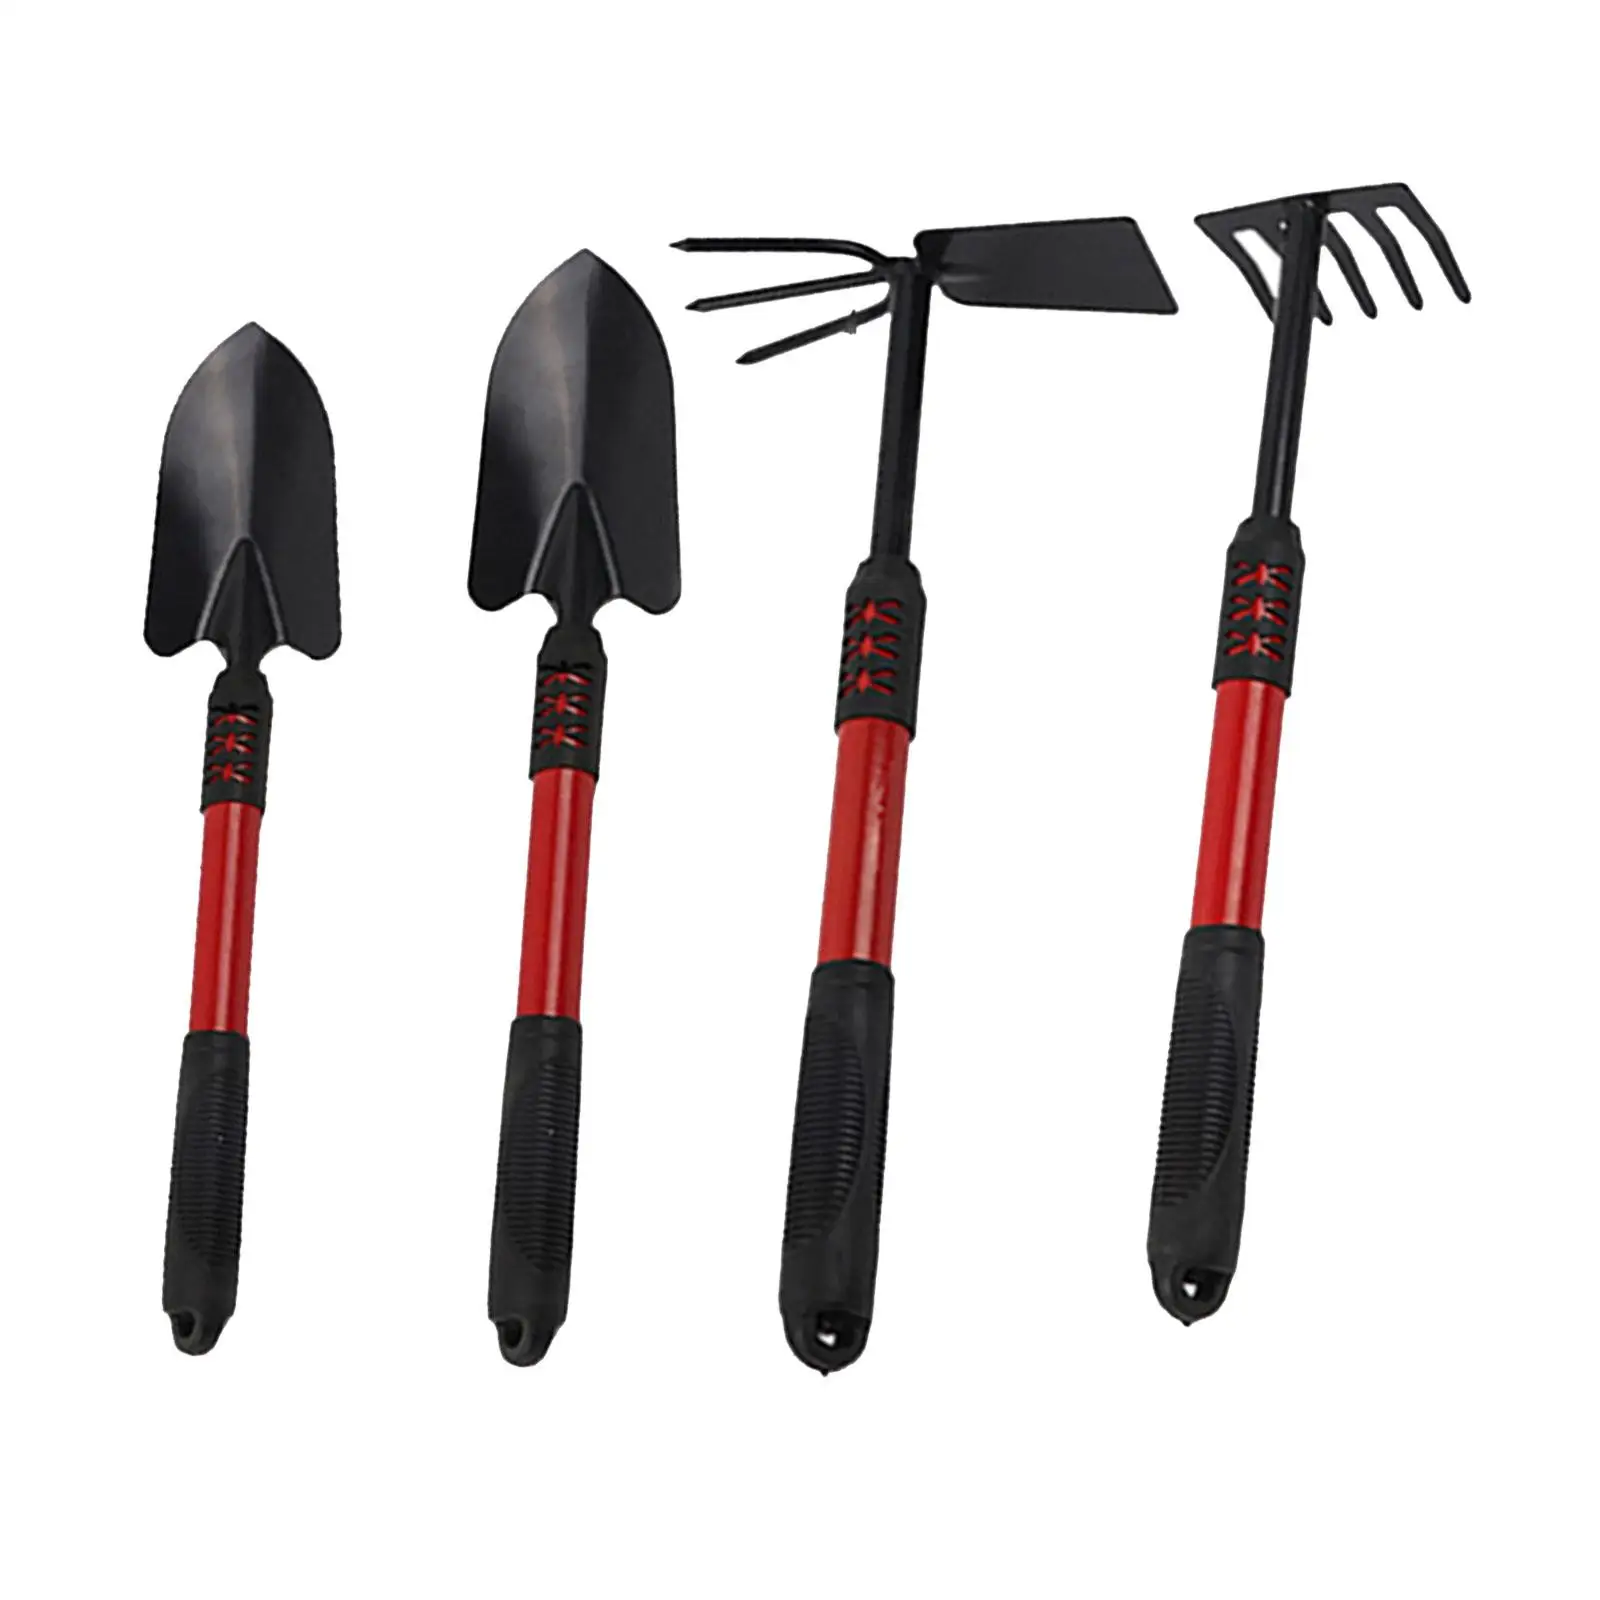 4Pcs Gardening Tool Kits Rake Garden Tool Set for Digging Gardening Weeding